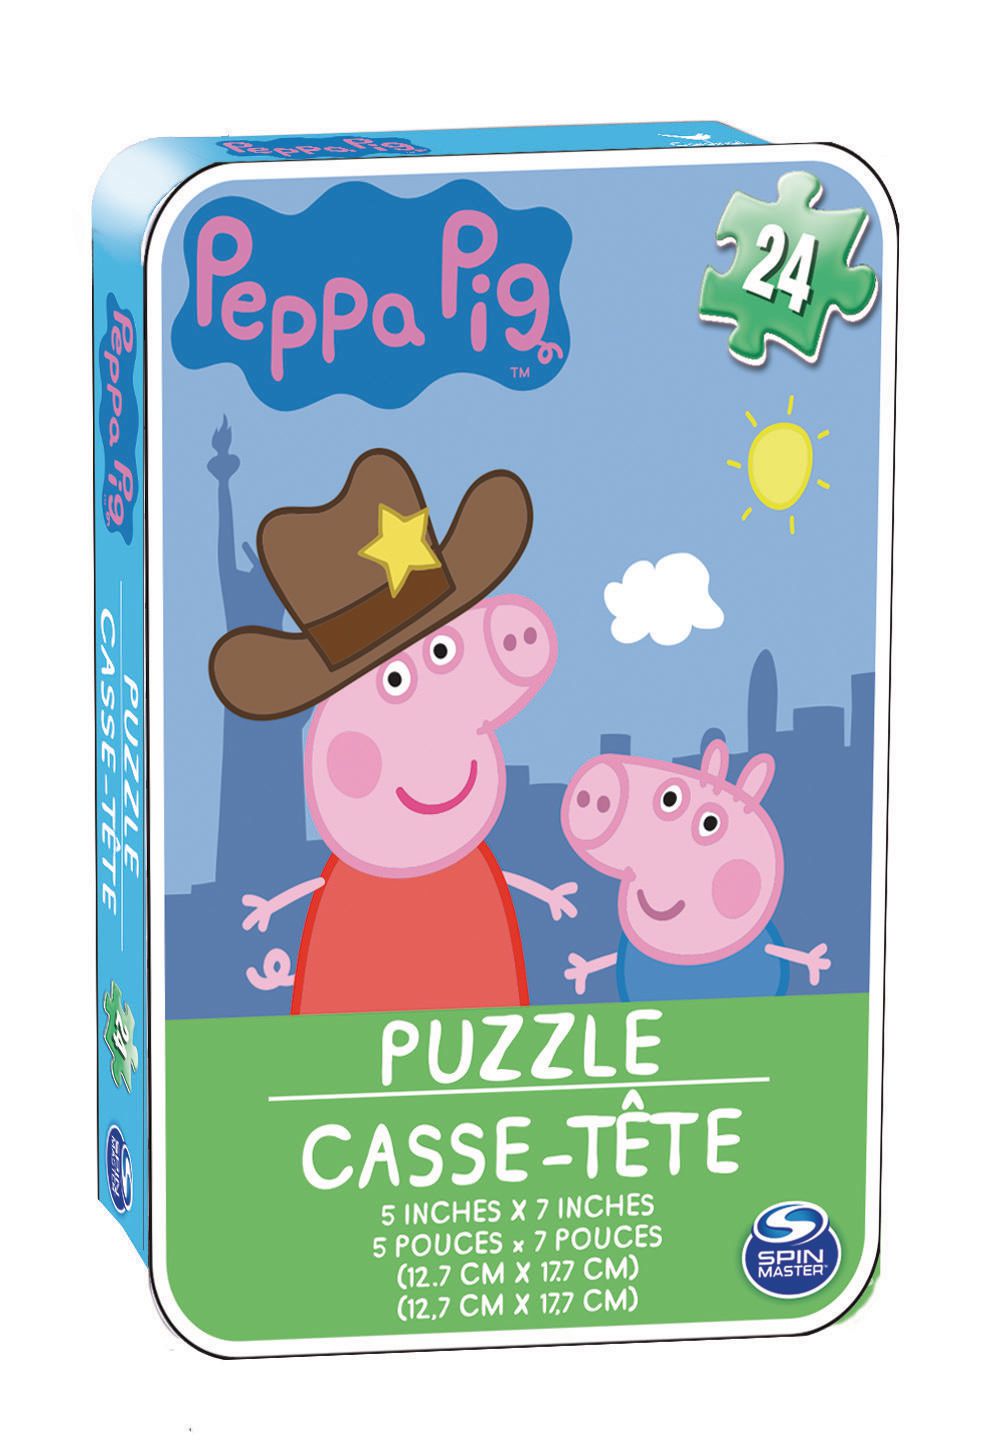 Peppa Pig - Casse-tête dans une mini-boîte en métal – 778988524640